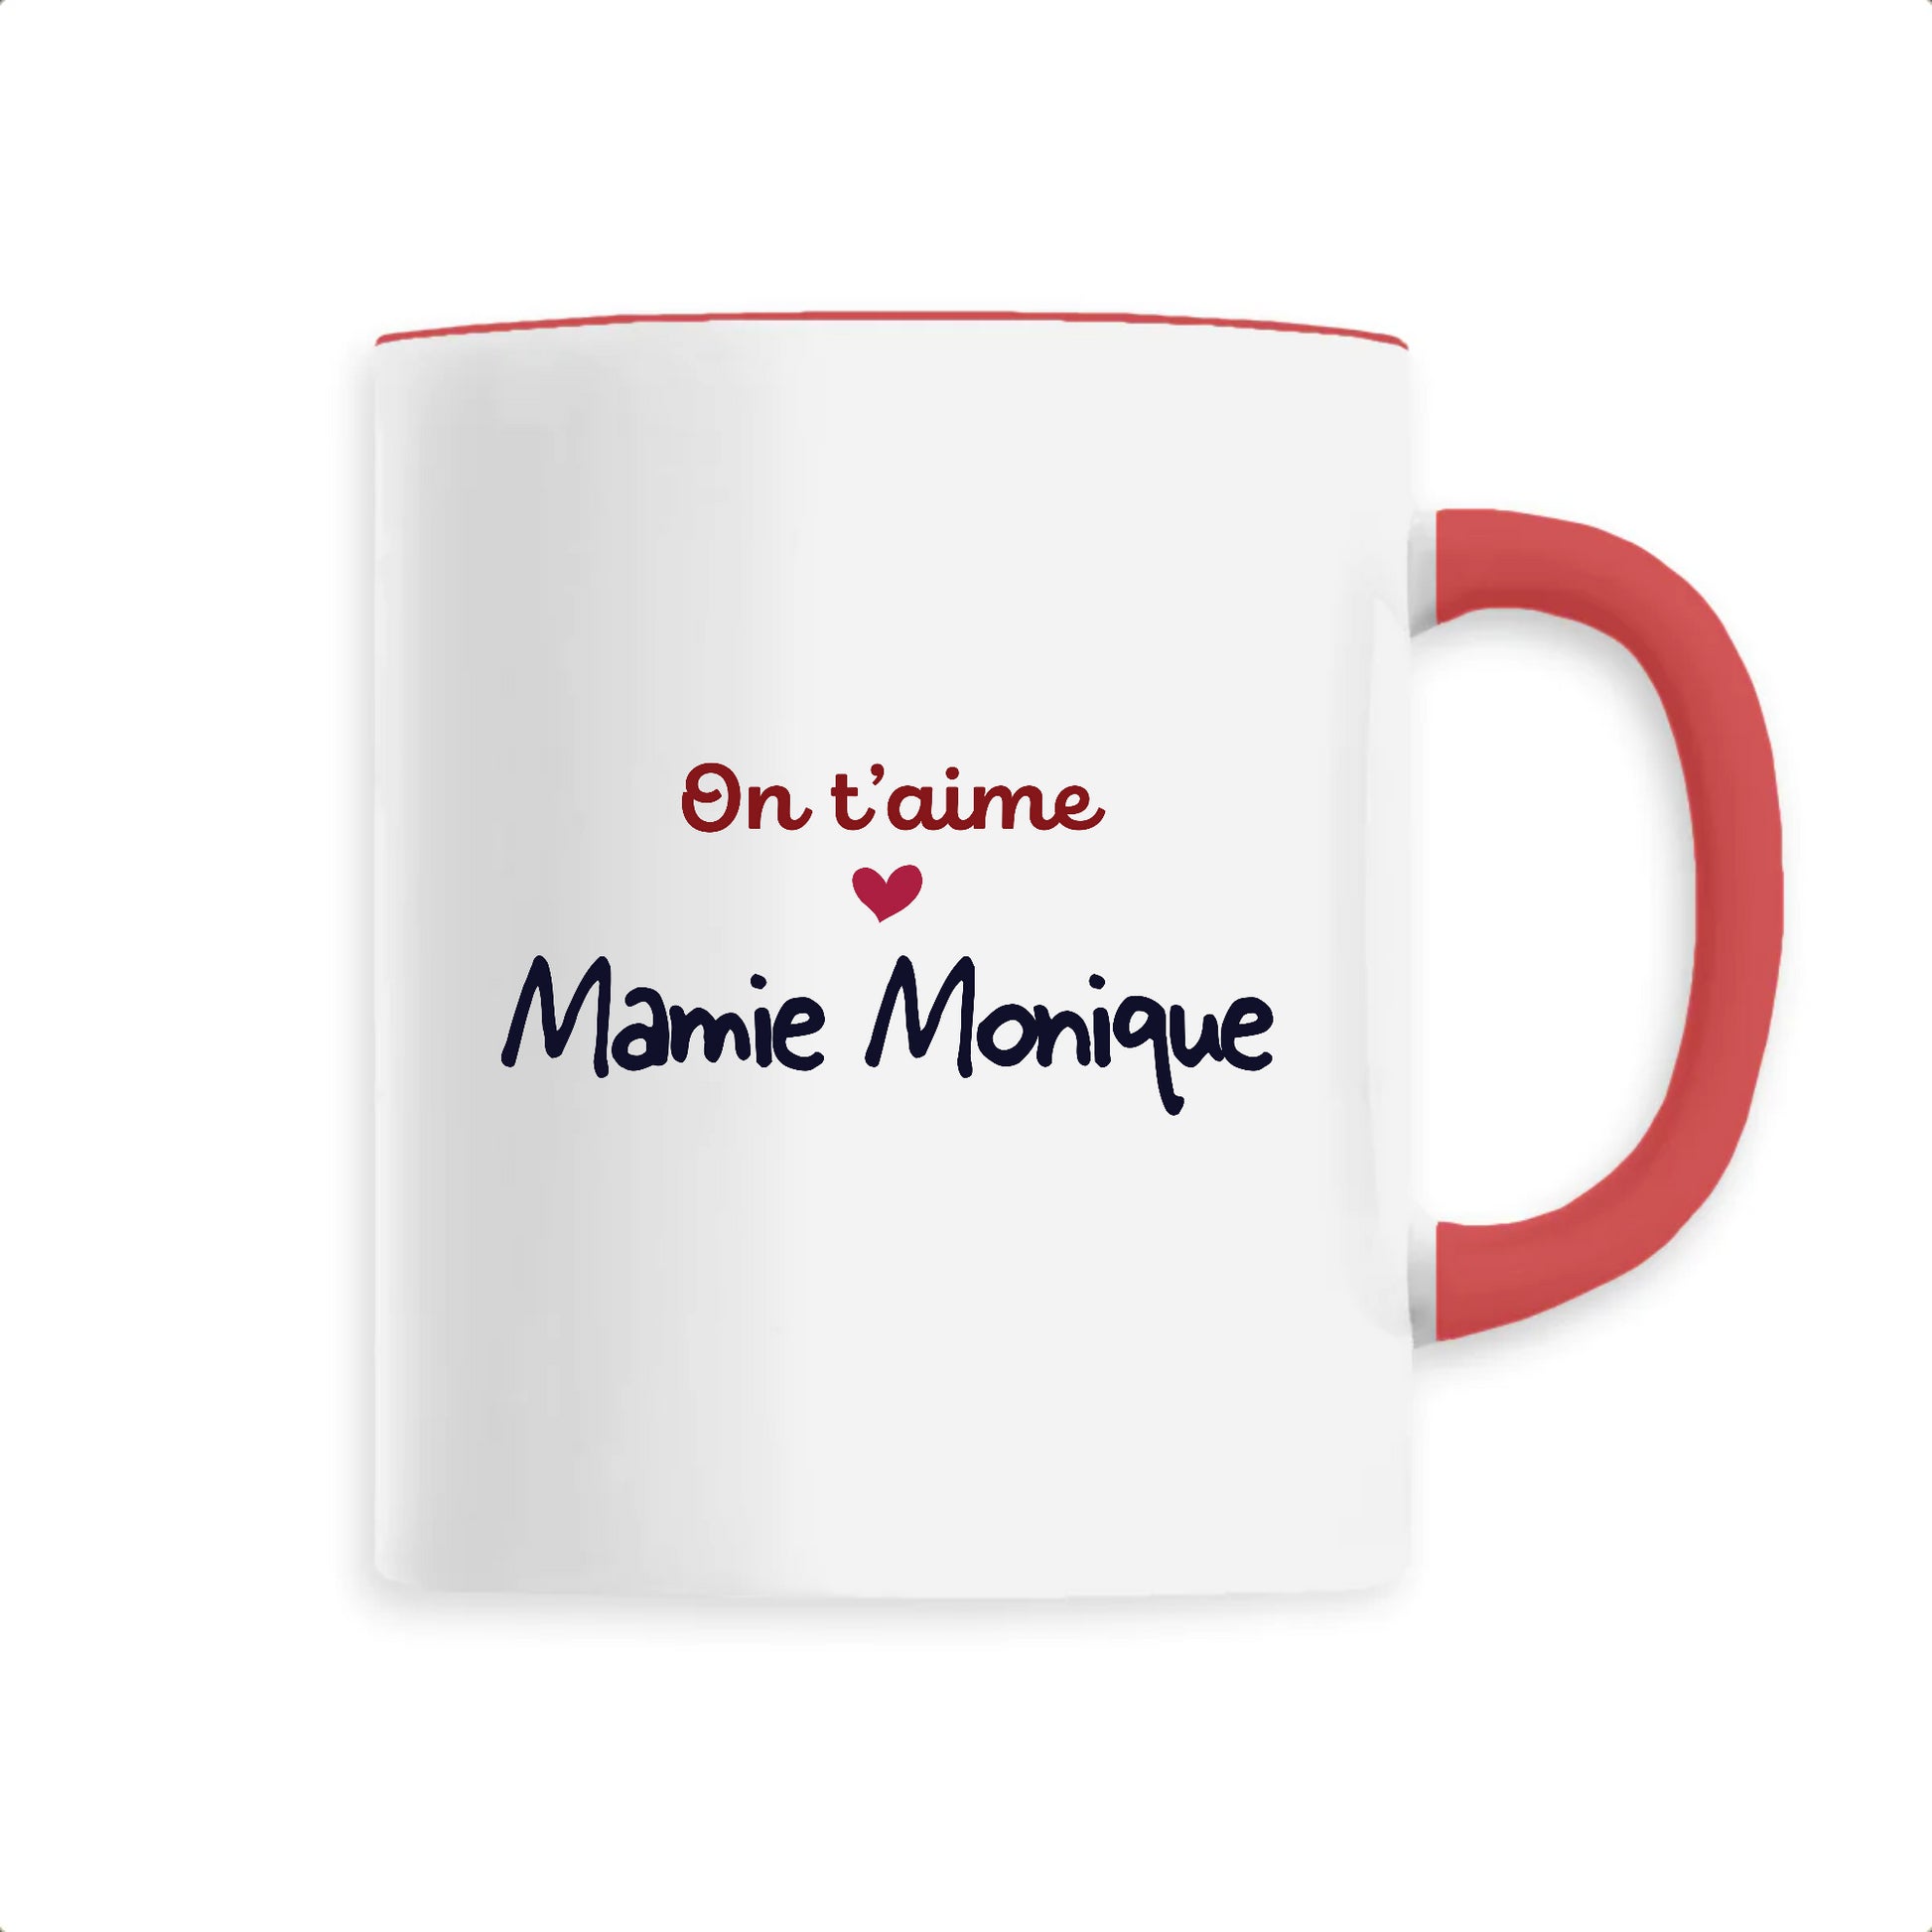 Mug en céramique personnalisable on t'aime de T-French, mug personnalisé, mug fête des grands mères, tasse fete des mamies, mug avec message personnalisé, mug on t'aime mamie, mug avec prénom, mug on t'aime mamie Rouge